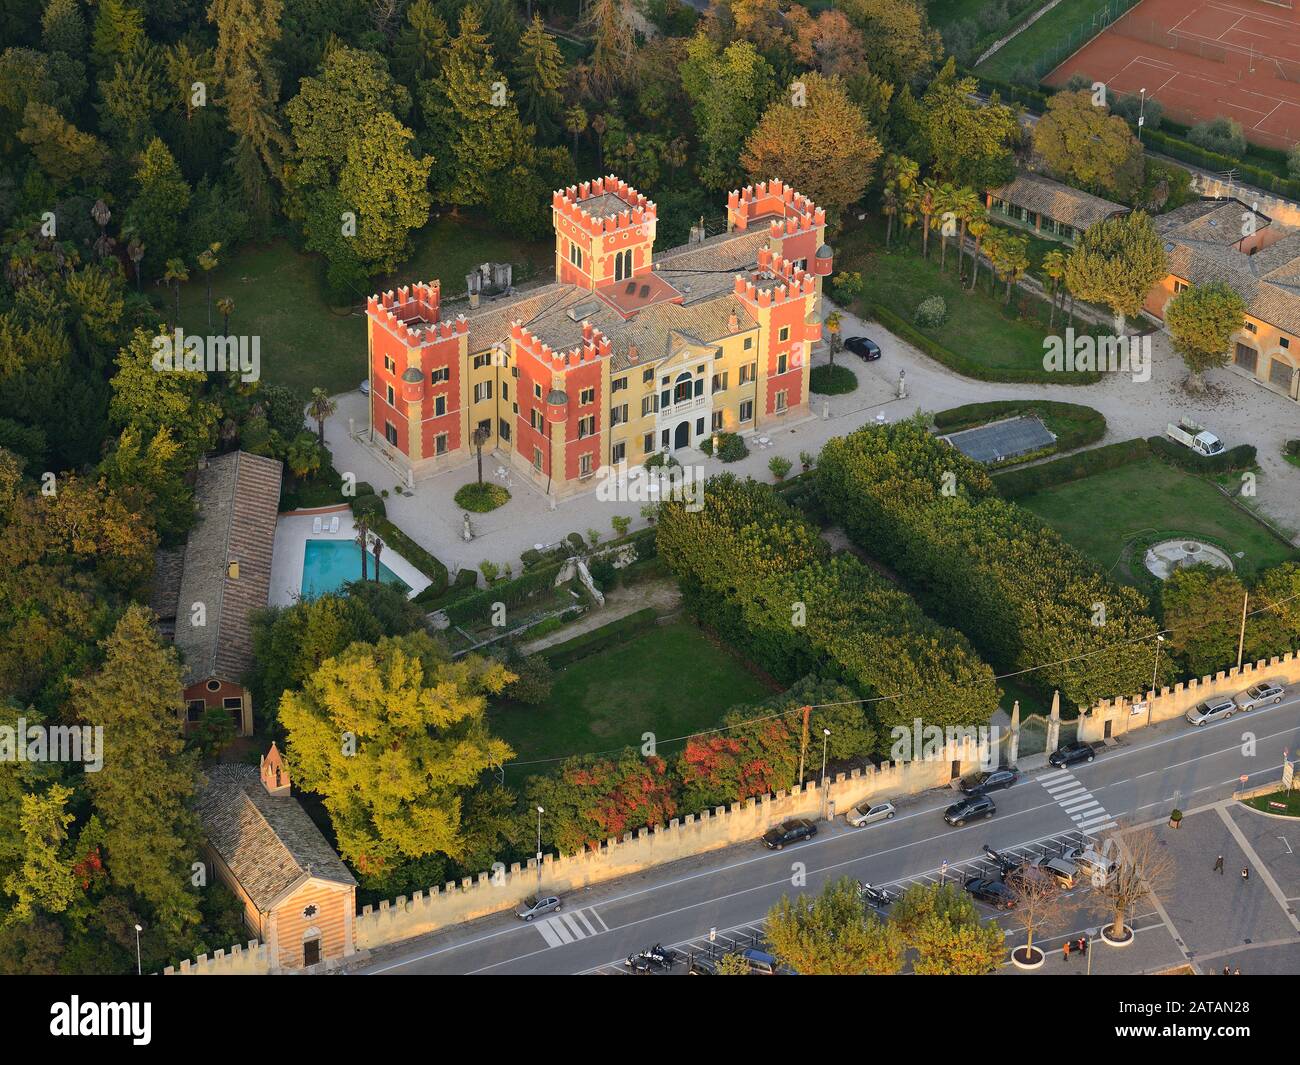 LUFTAUFNAHME. Villa Albertini. Stadt Garda, Gardasee, Venetien, Italien. Stockfoto